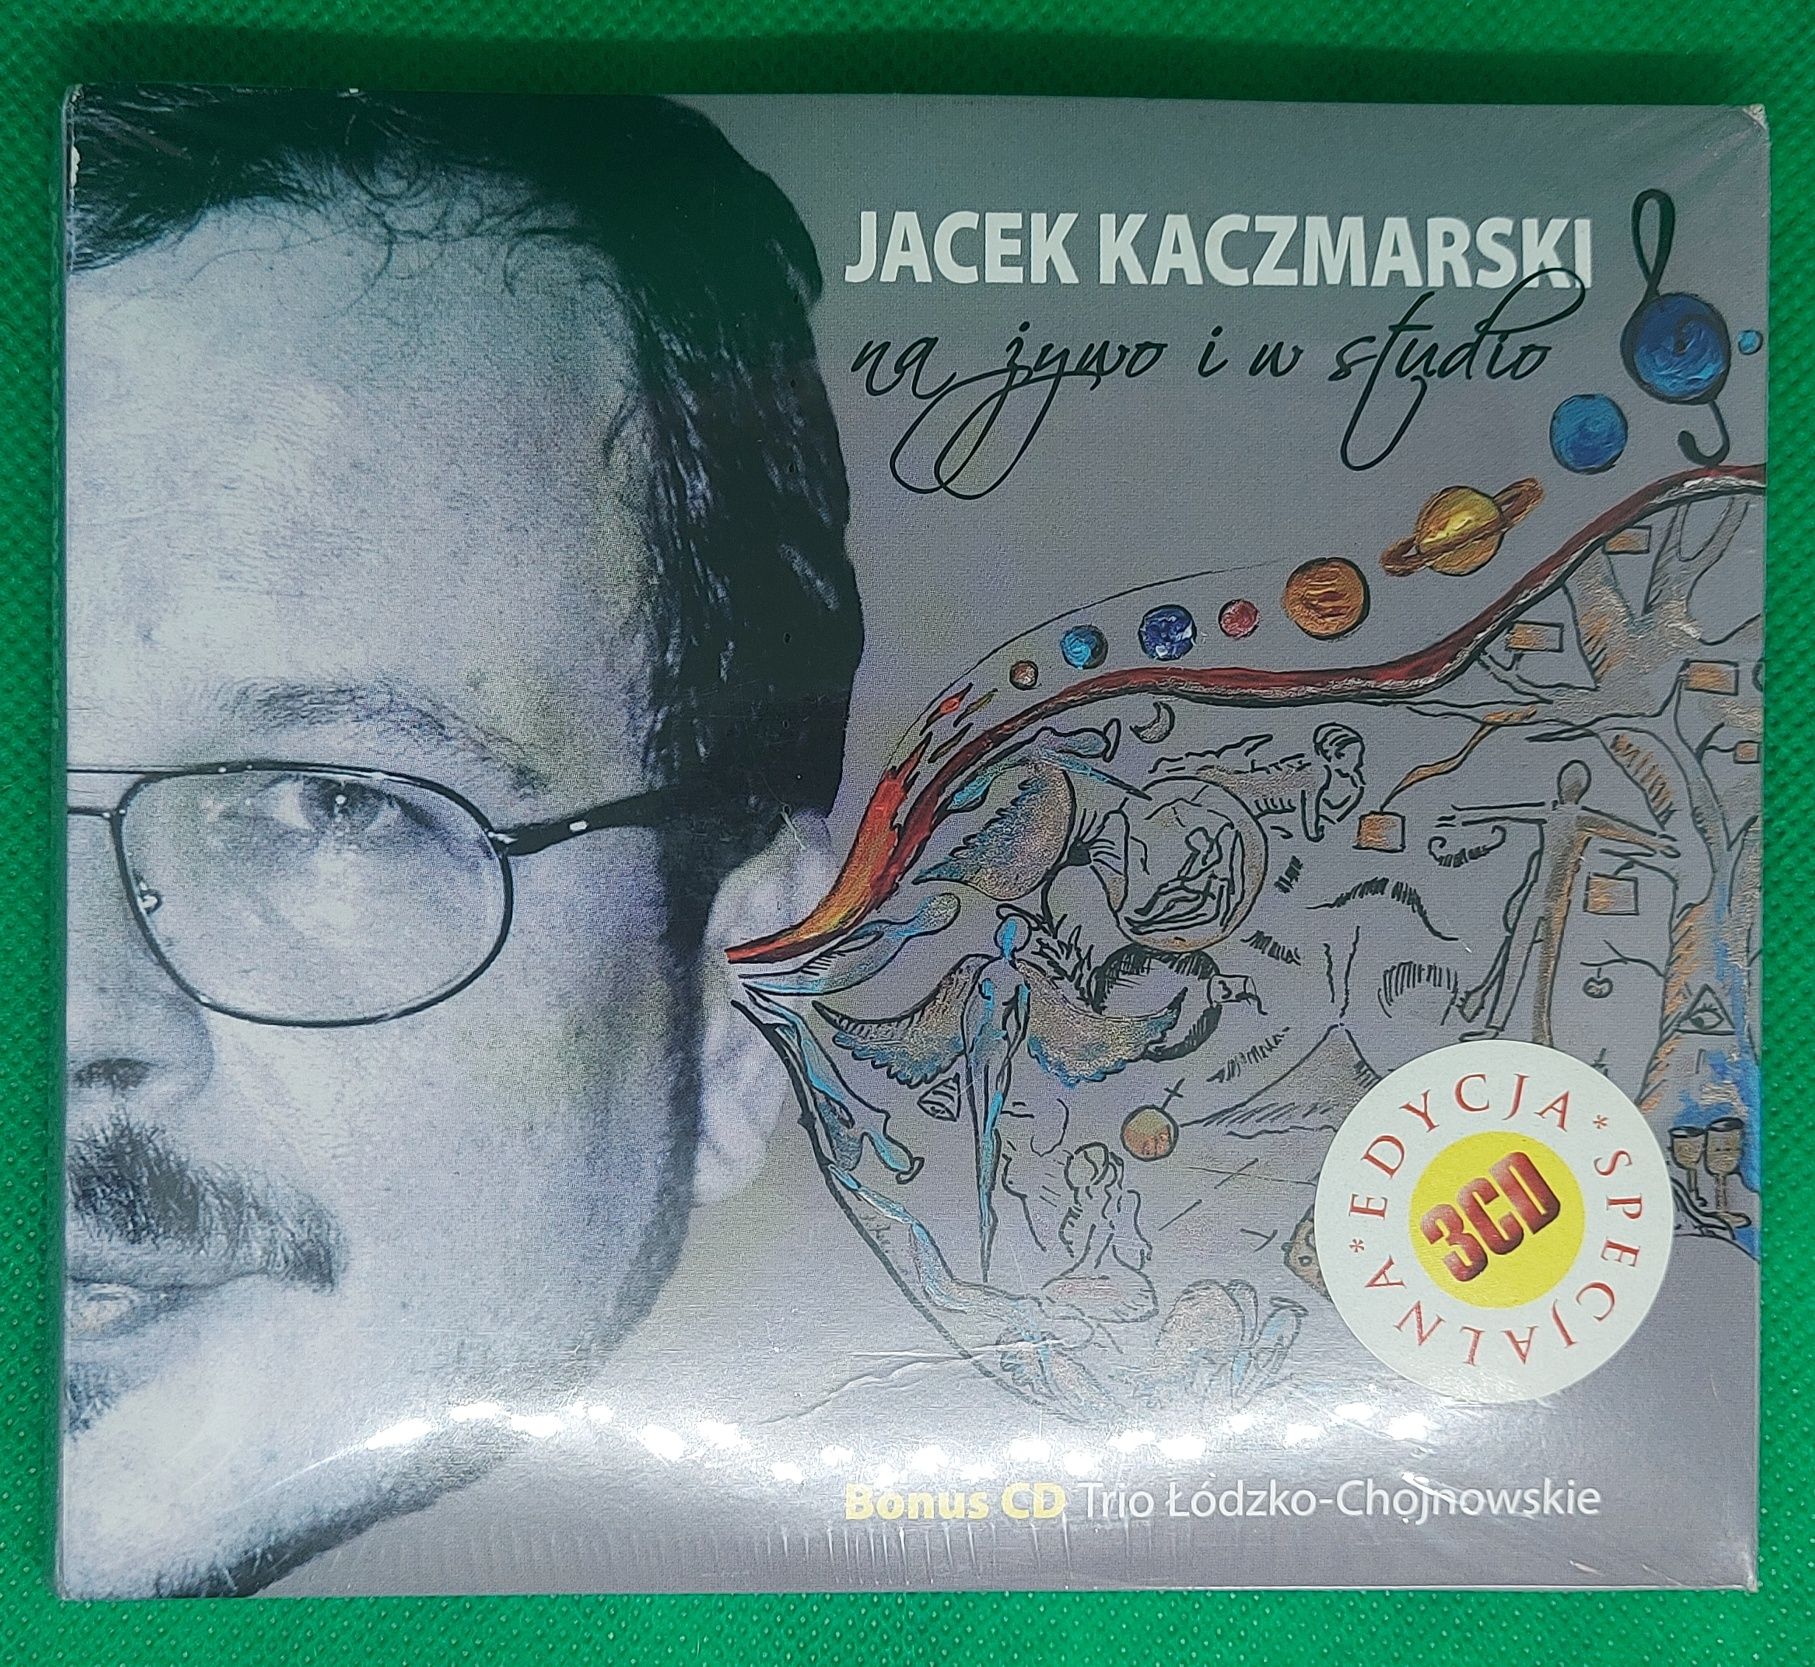 Jacek Kaczmarski na żywo i w studio [Edycja specjalna] 4CD.Folia.2010r